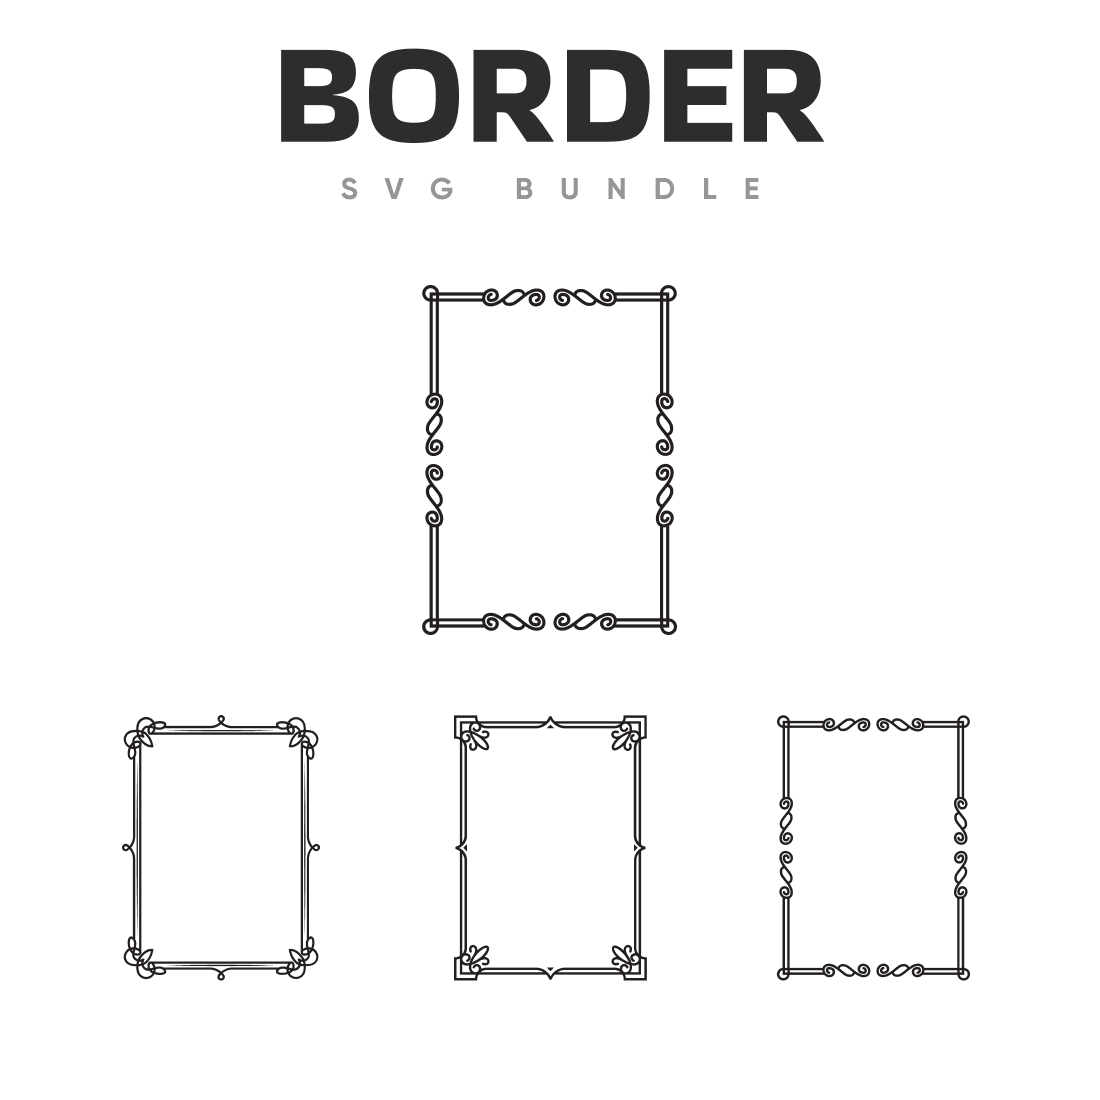 Border svg bundle.